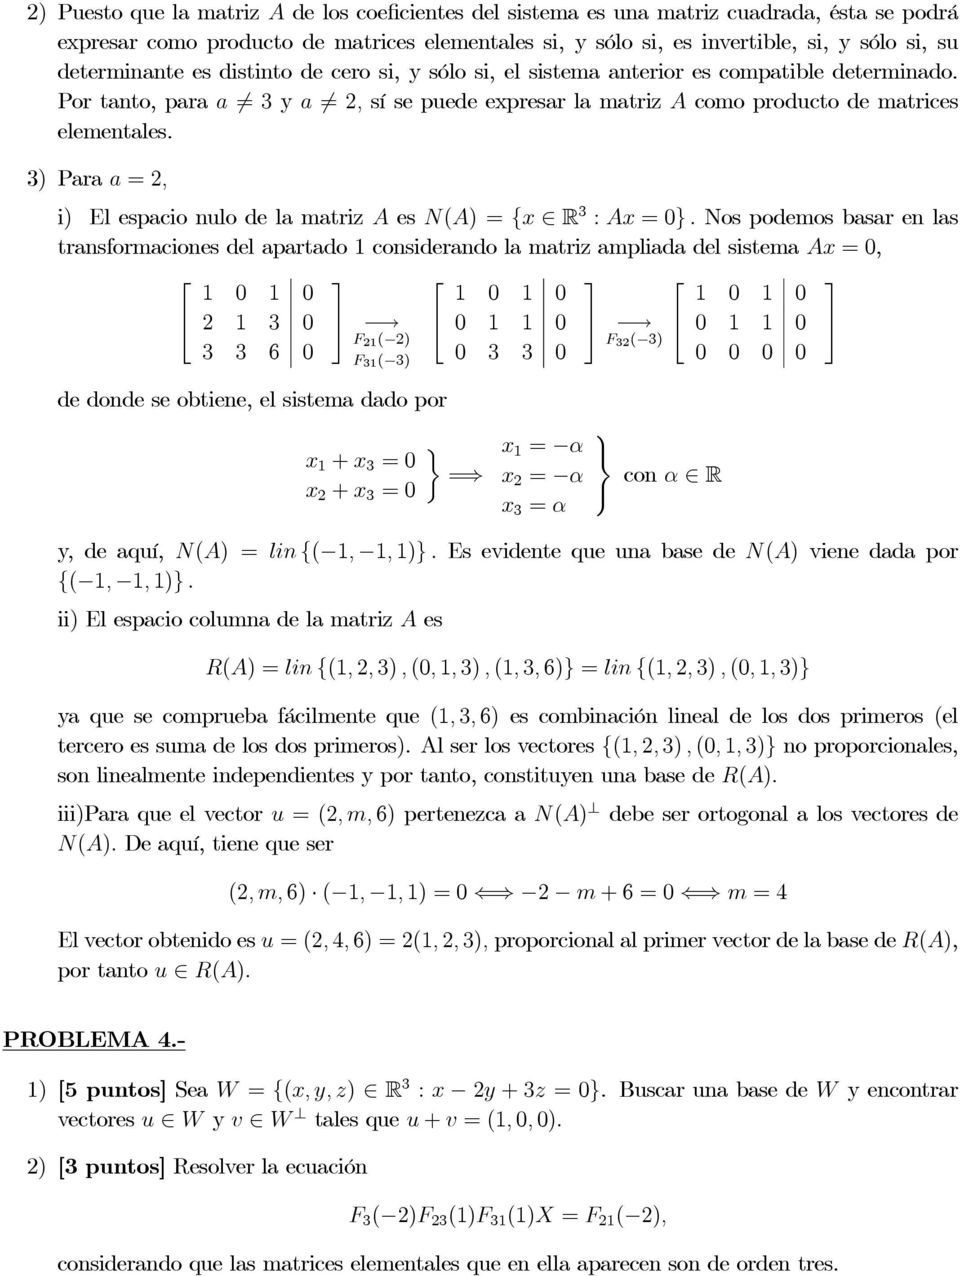 3) Para a, i) ElespacionulodelamatrizA es N(A) {x R 3 : Ax }.